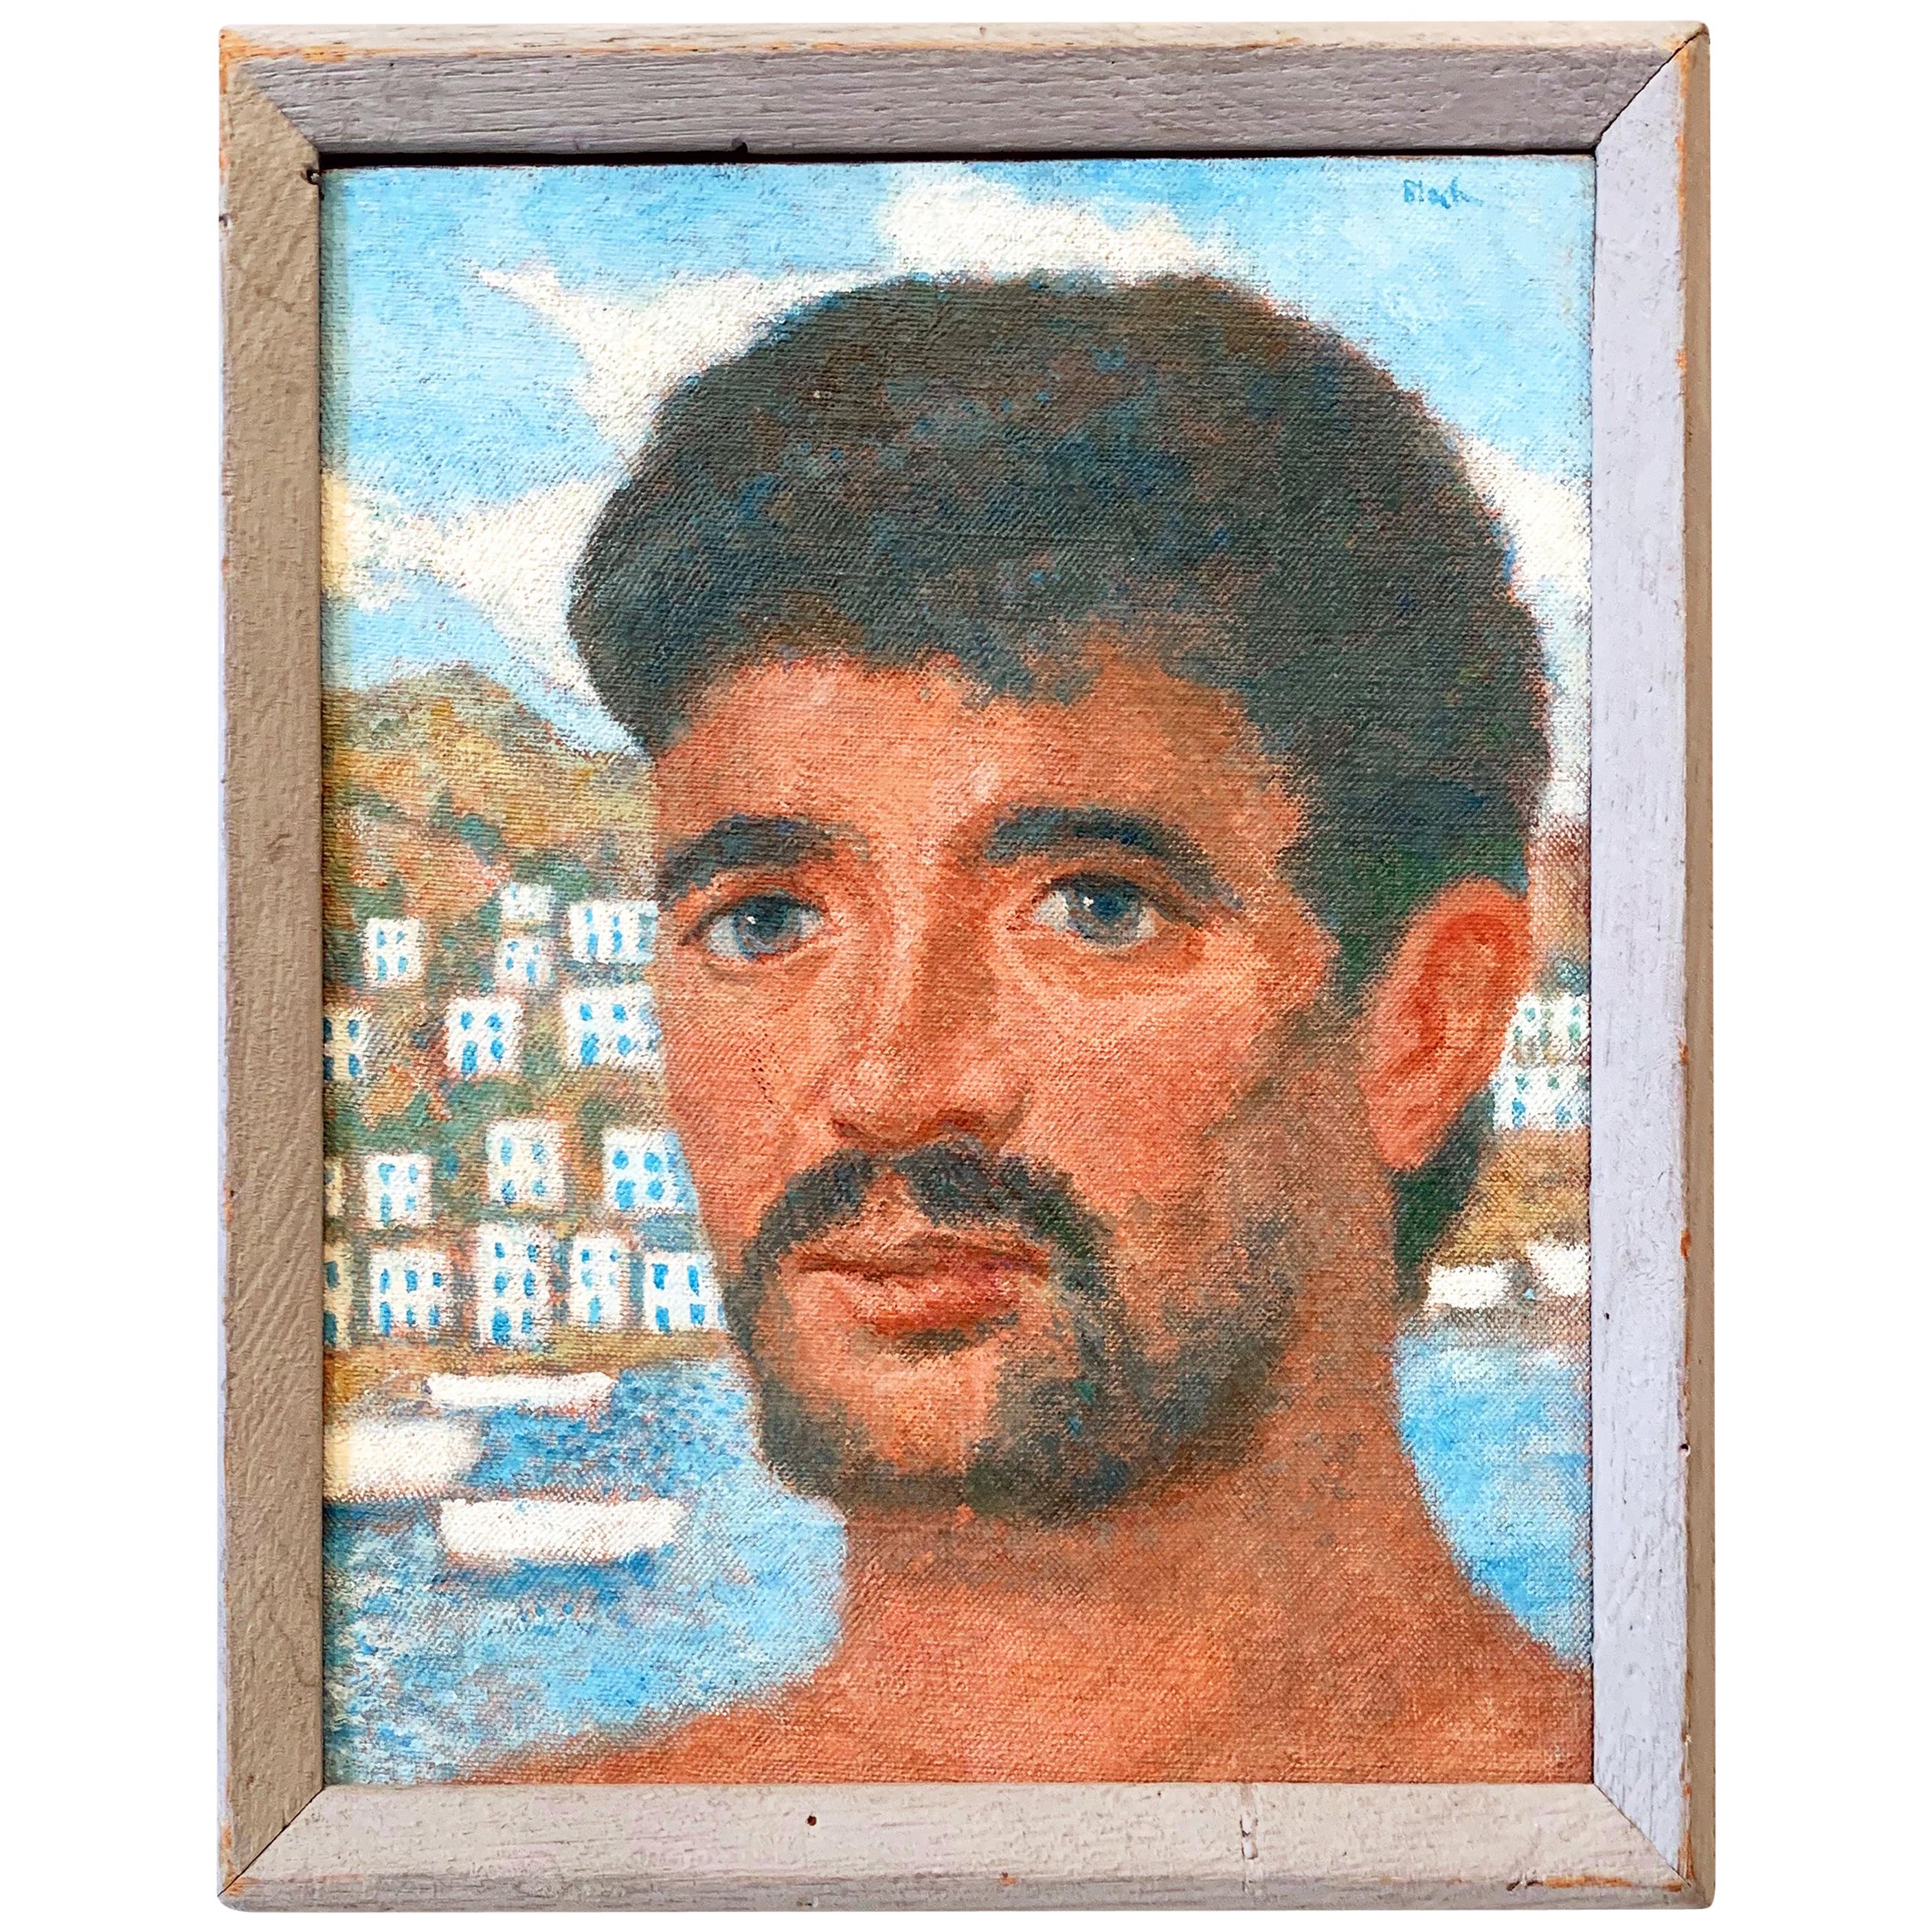 "Greek Islander", Portrait Vivid d'un homme grec avec la mer Égée en toile de fond